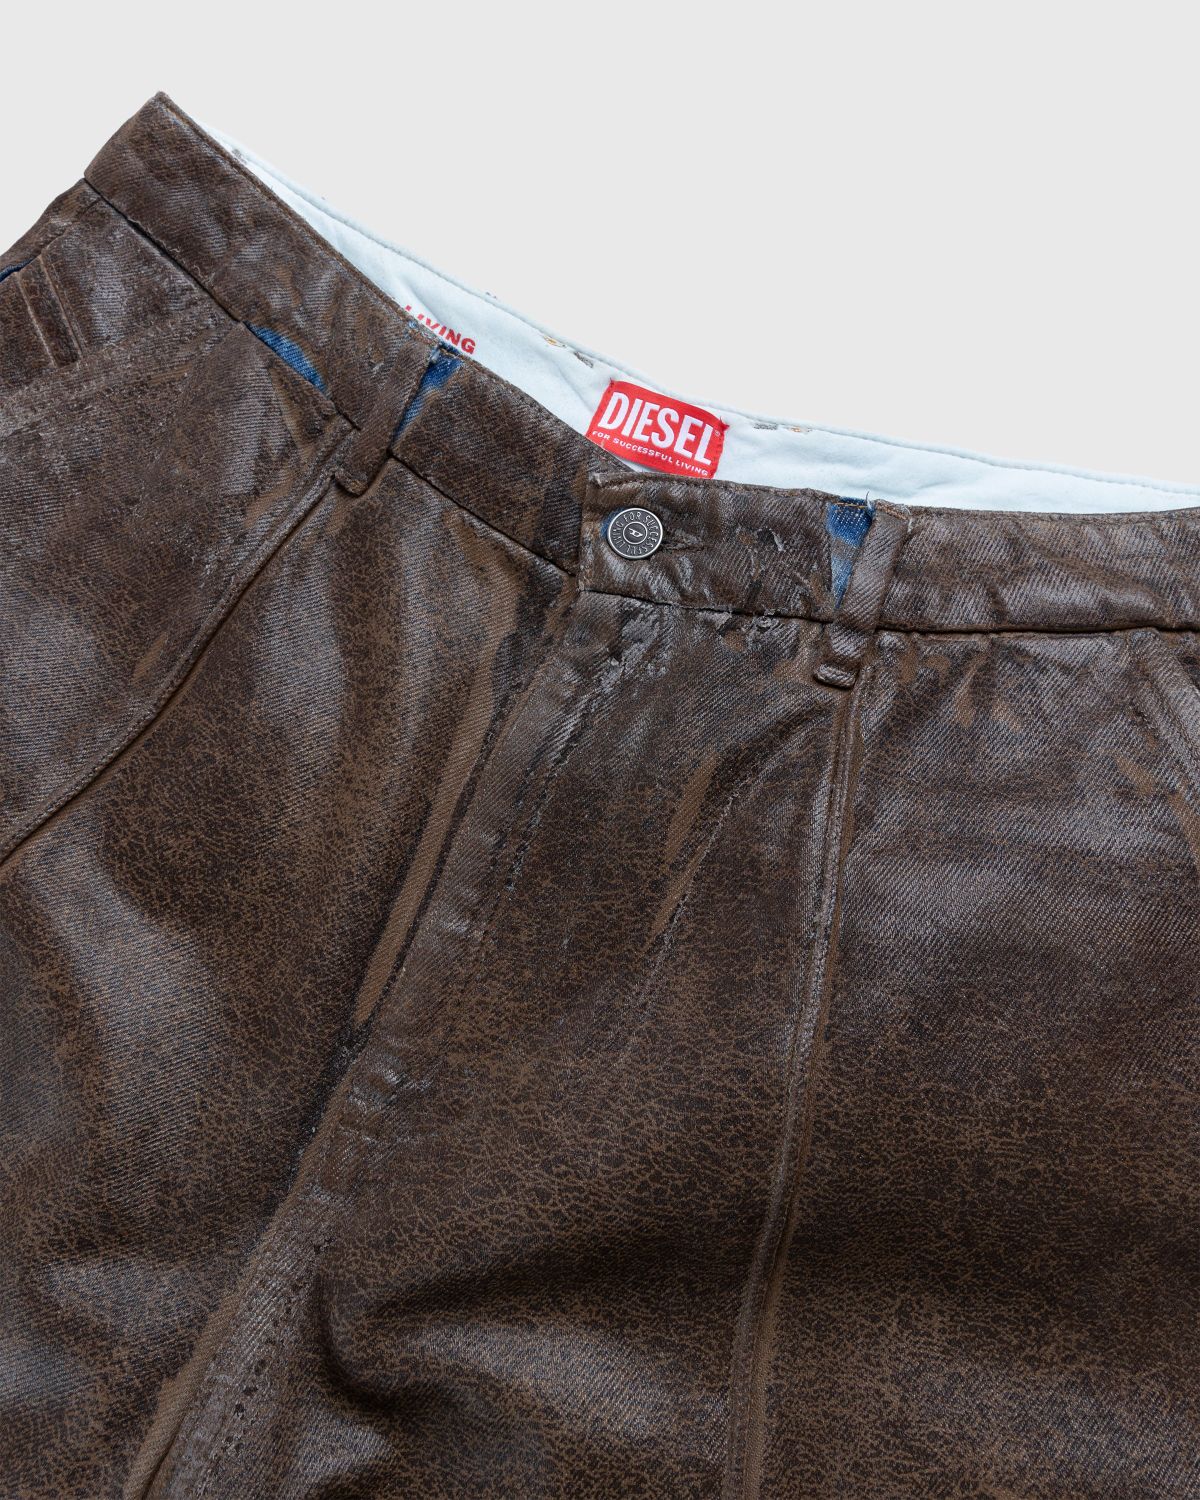 Diesel – Chino Work Jeans Aztec - Pants - Beige - Image 4